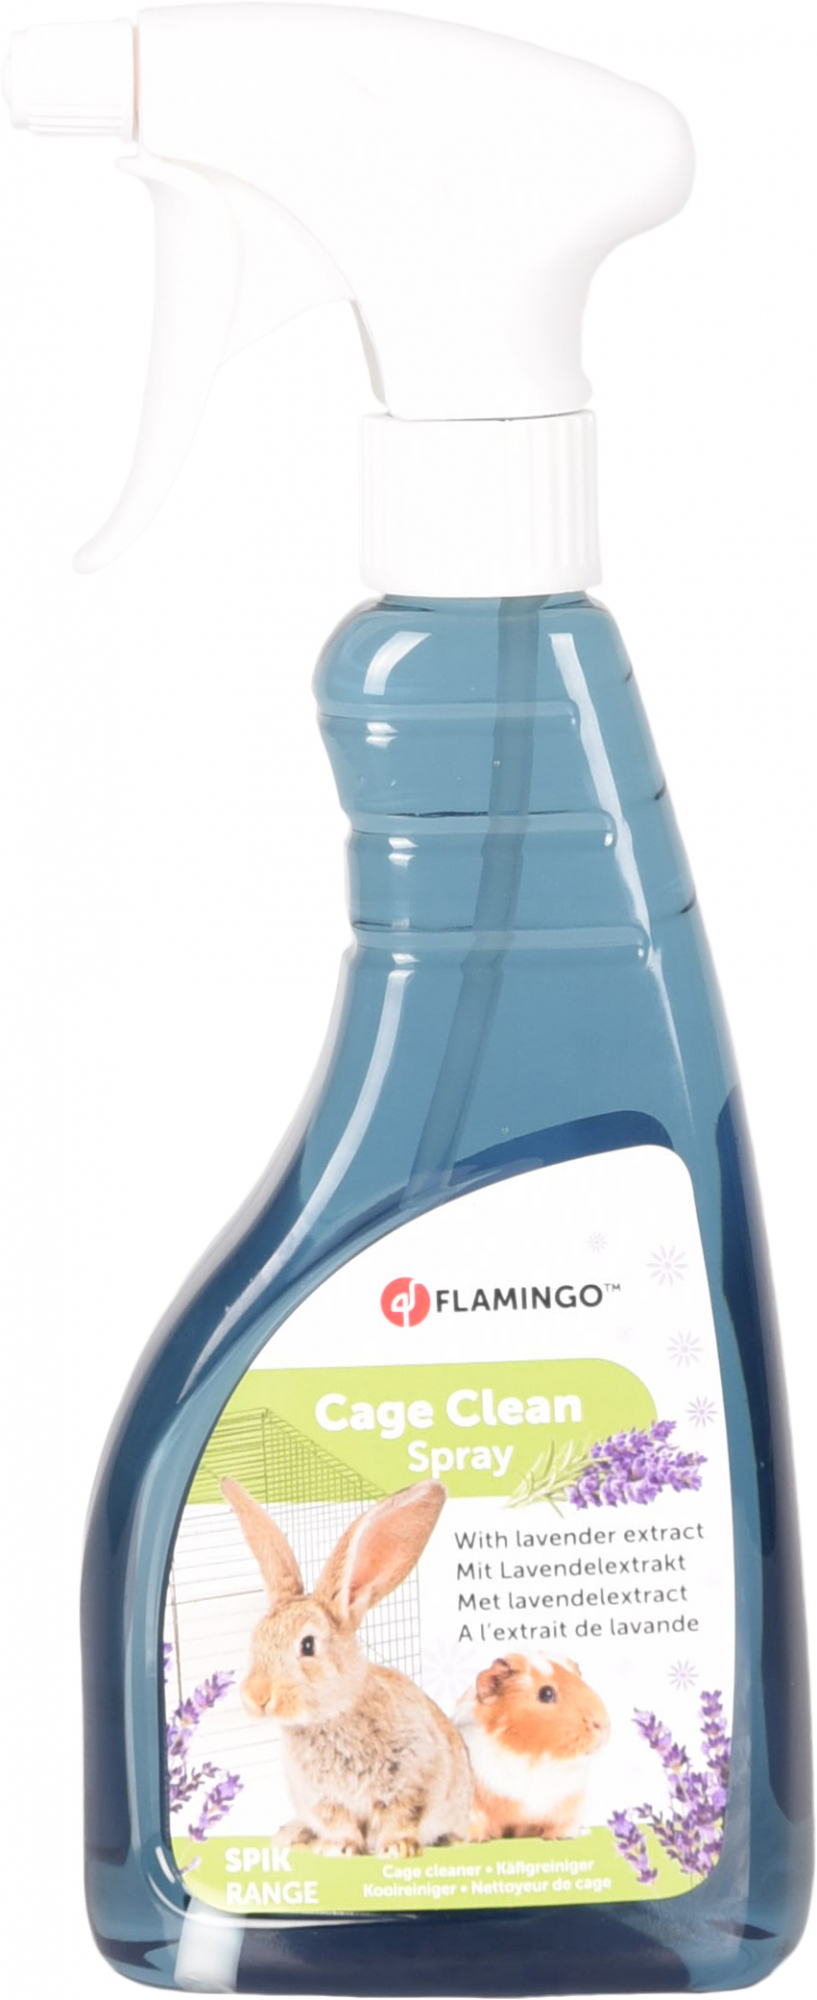 Clean Spray de limpeza para gaiola de roedores - 500ml - 2 fragâncias disponíveis